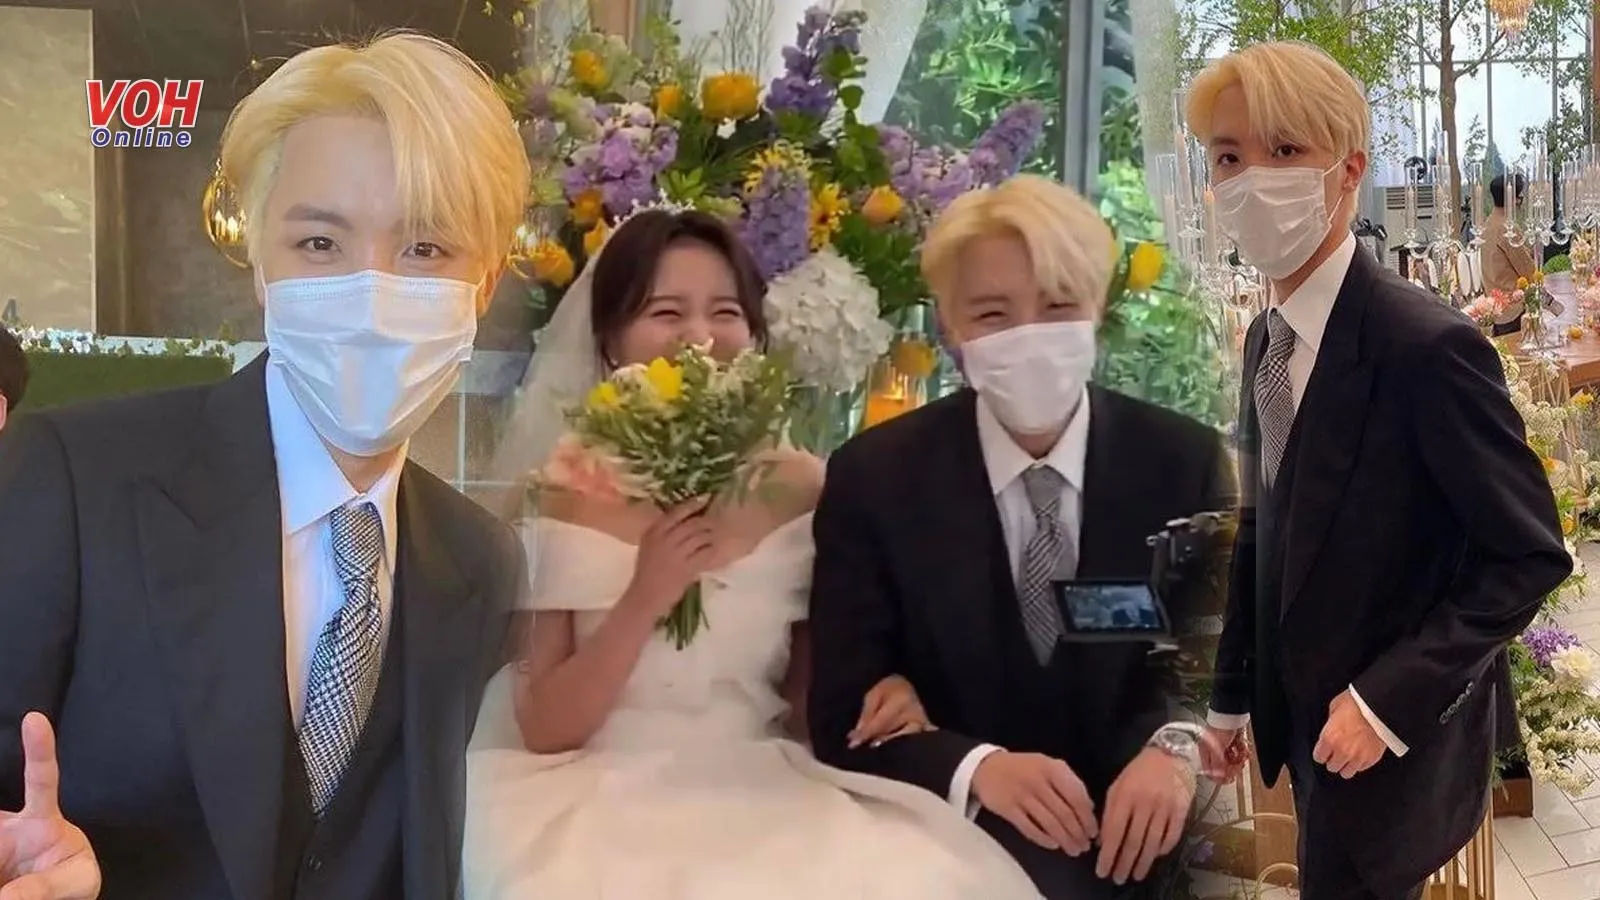 RM, Jin và V (BTS) diện vest bảnh bao đến dự đám cưới chị gái J-Hope